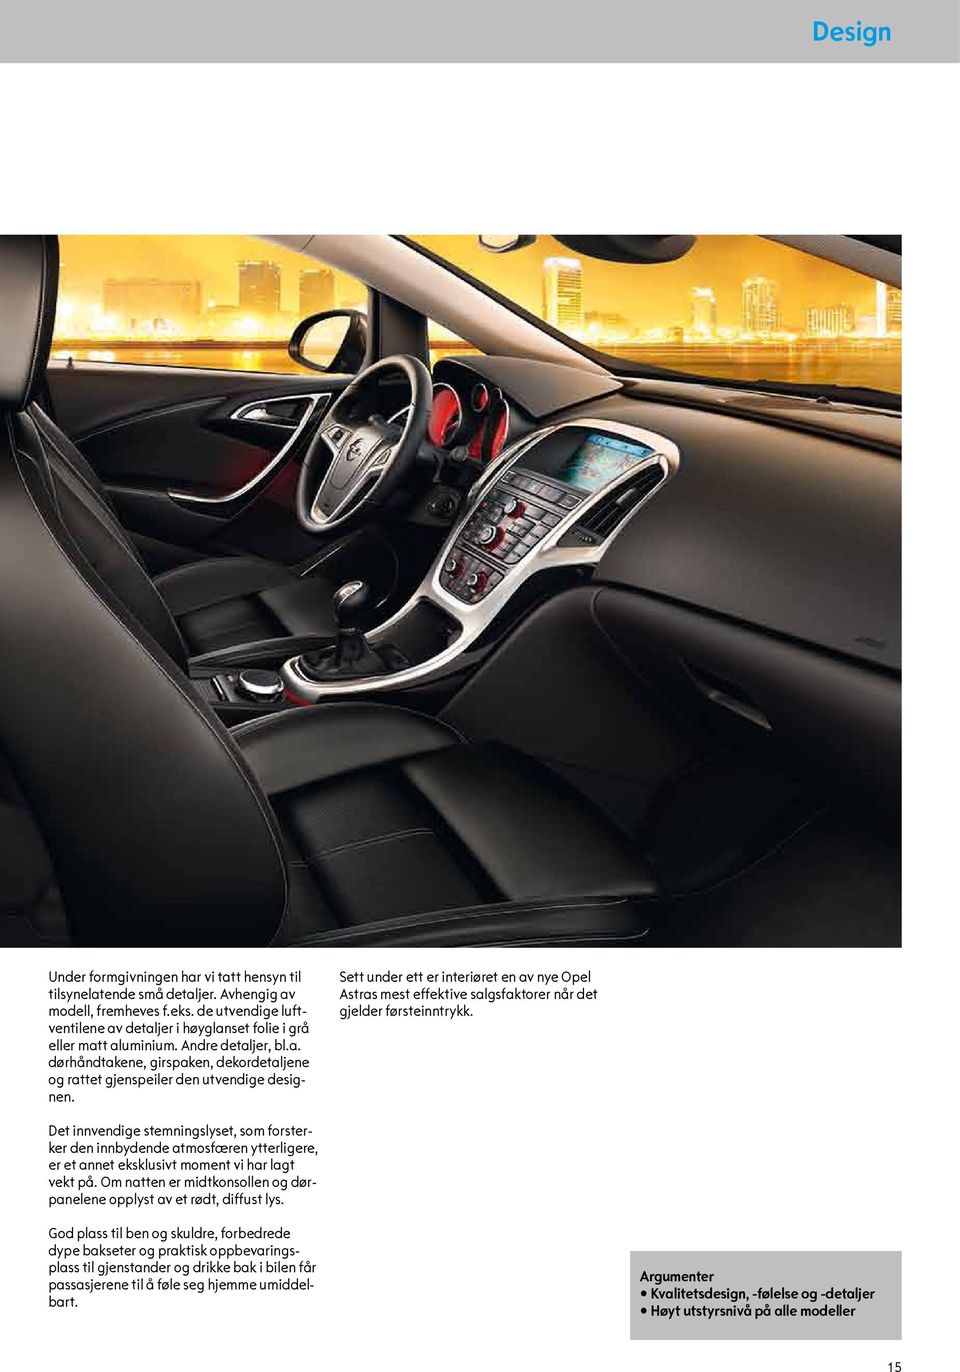 Sett under ett er interiøret en av nye Opel Astras mest effektive salgsfaktorer når det gjelder førsteinntrykk.